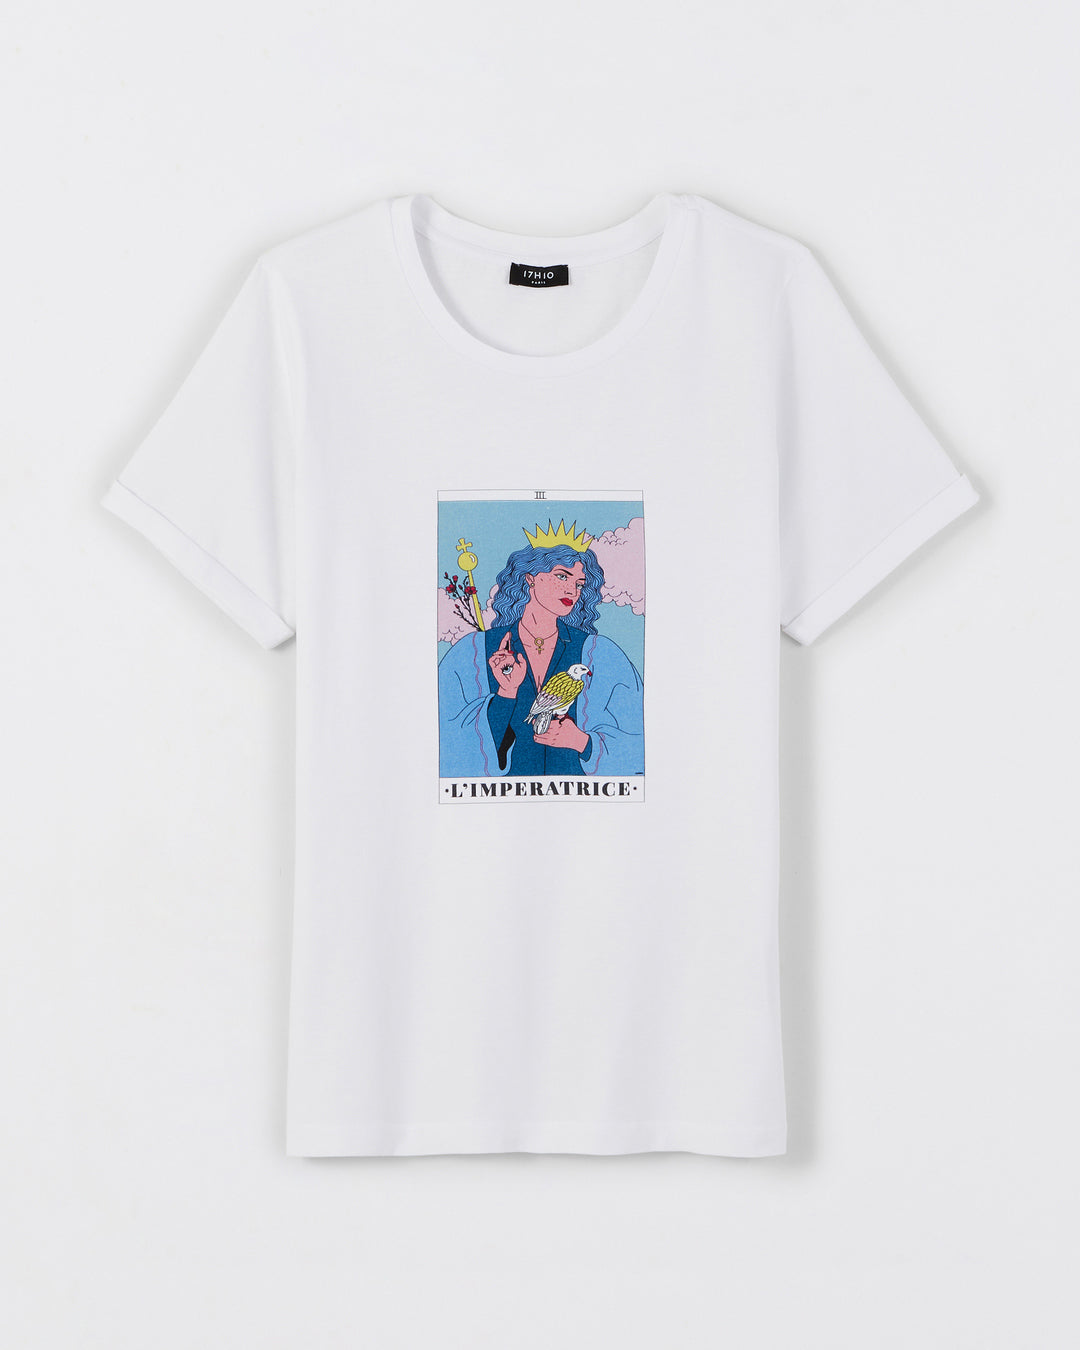 Tarot de Marseille illustrated T-shirt - The Empress 👑